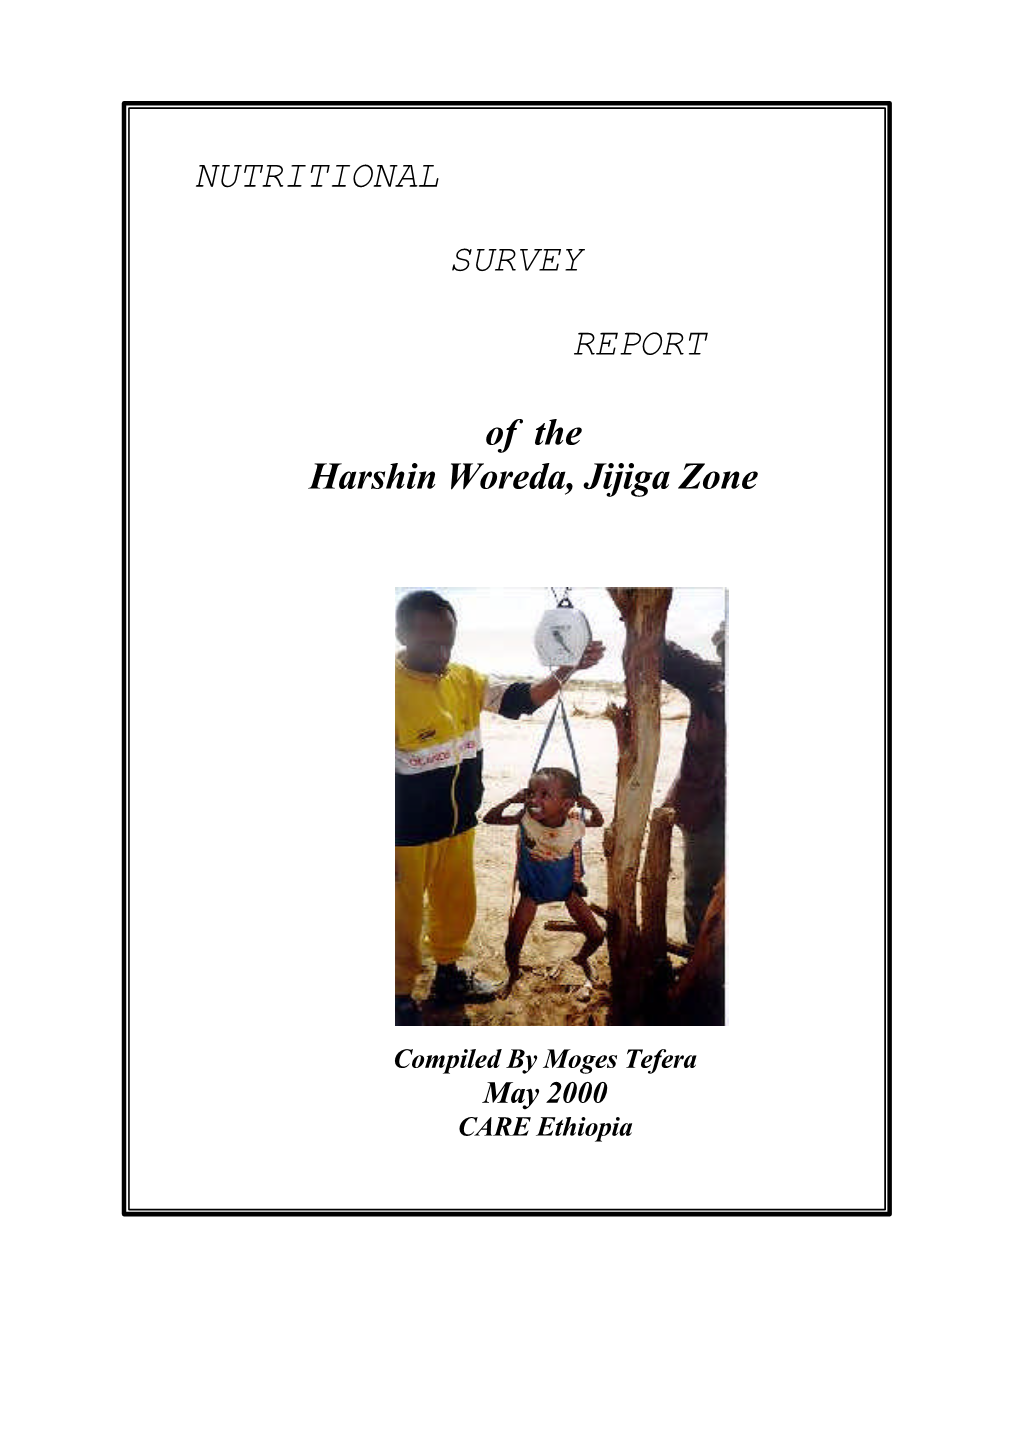 NUTRITIONAL SURVEY REPORT of the Harshin Woreda, Jijiga Zone